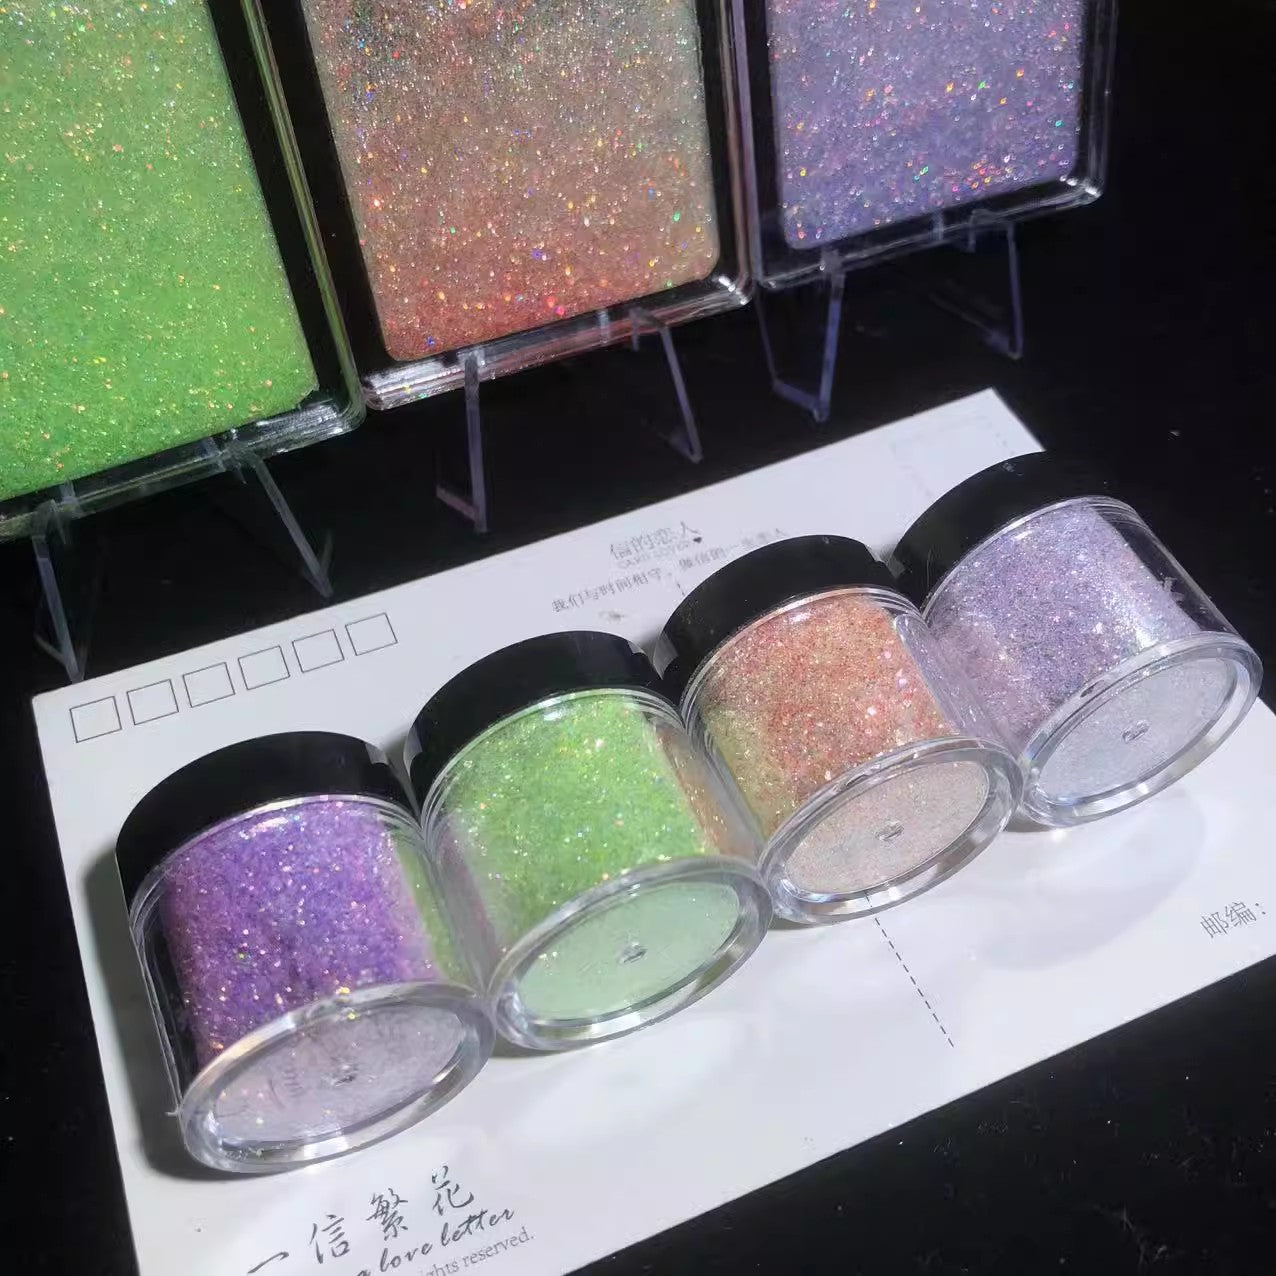 3 Colors Non-sink Glitter Laser Powder Glitter for Resin